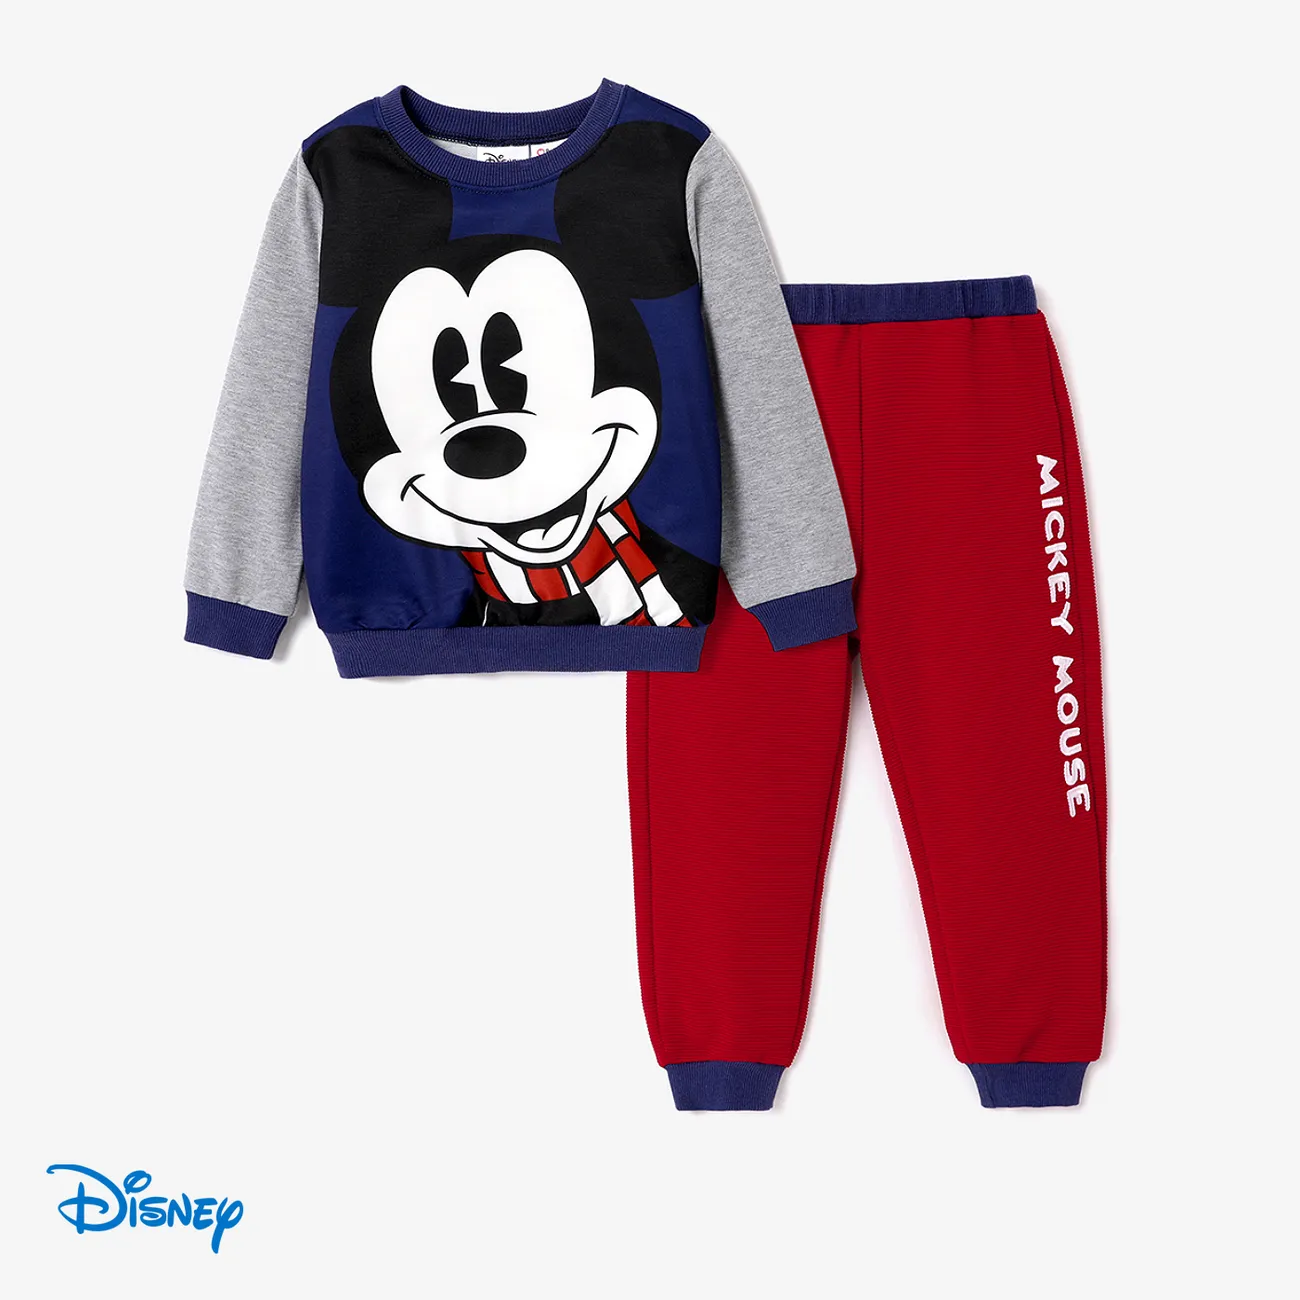 Disney Mickey and Friends Niño pequeño Chico Costura de tela Infantil conjuntos de sudadera Azul oscuro big image 1